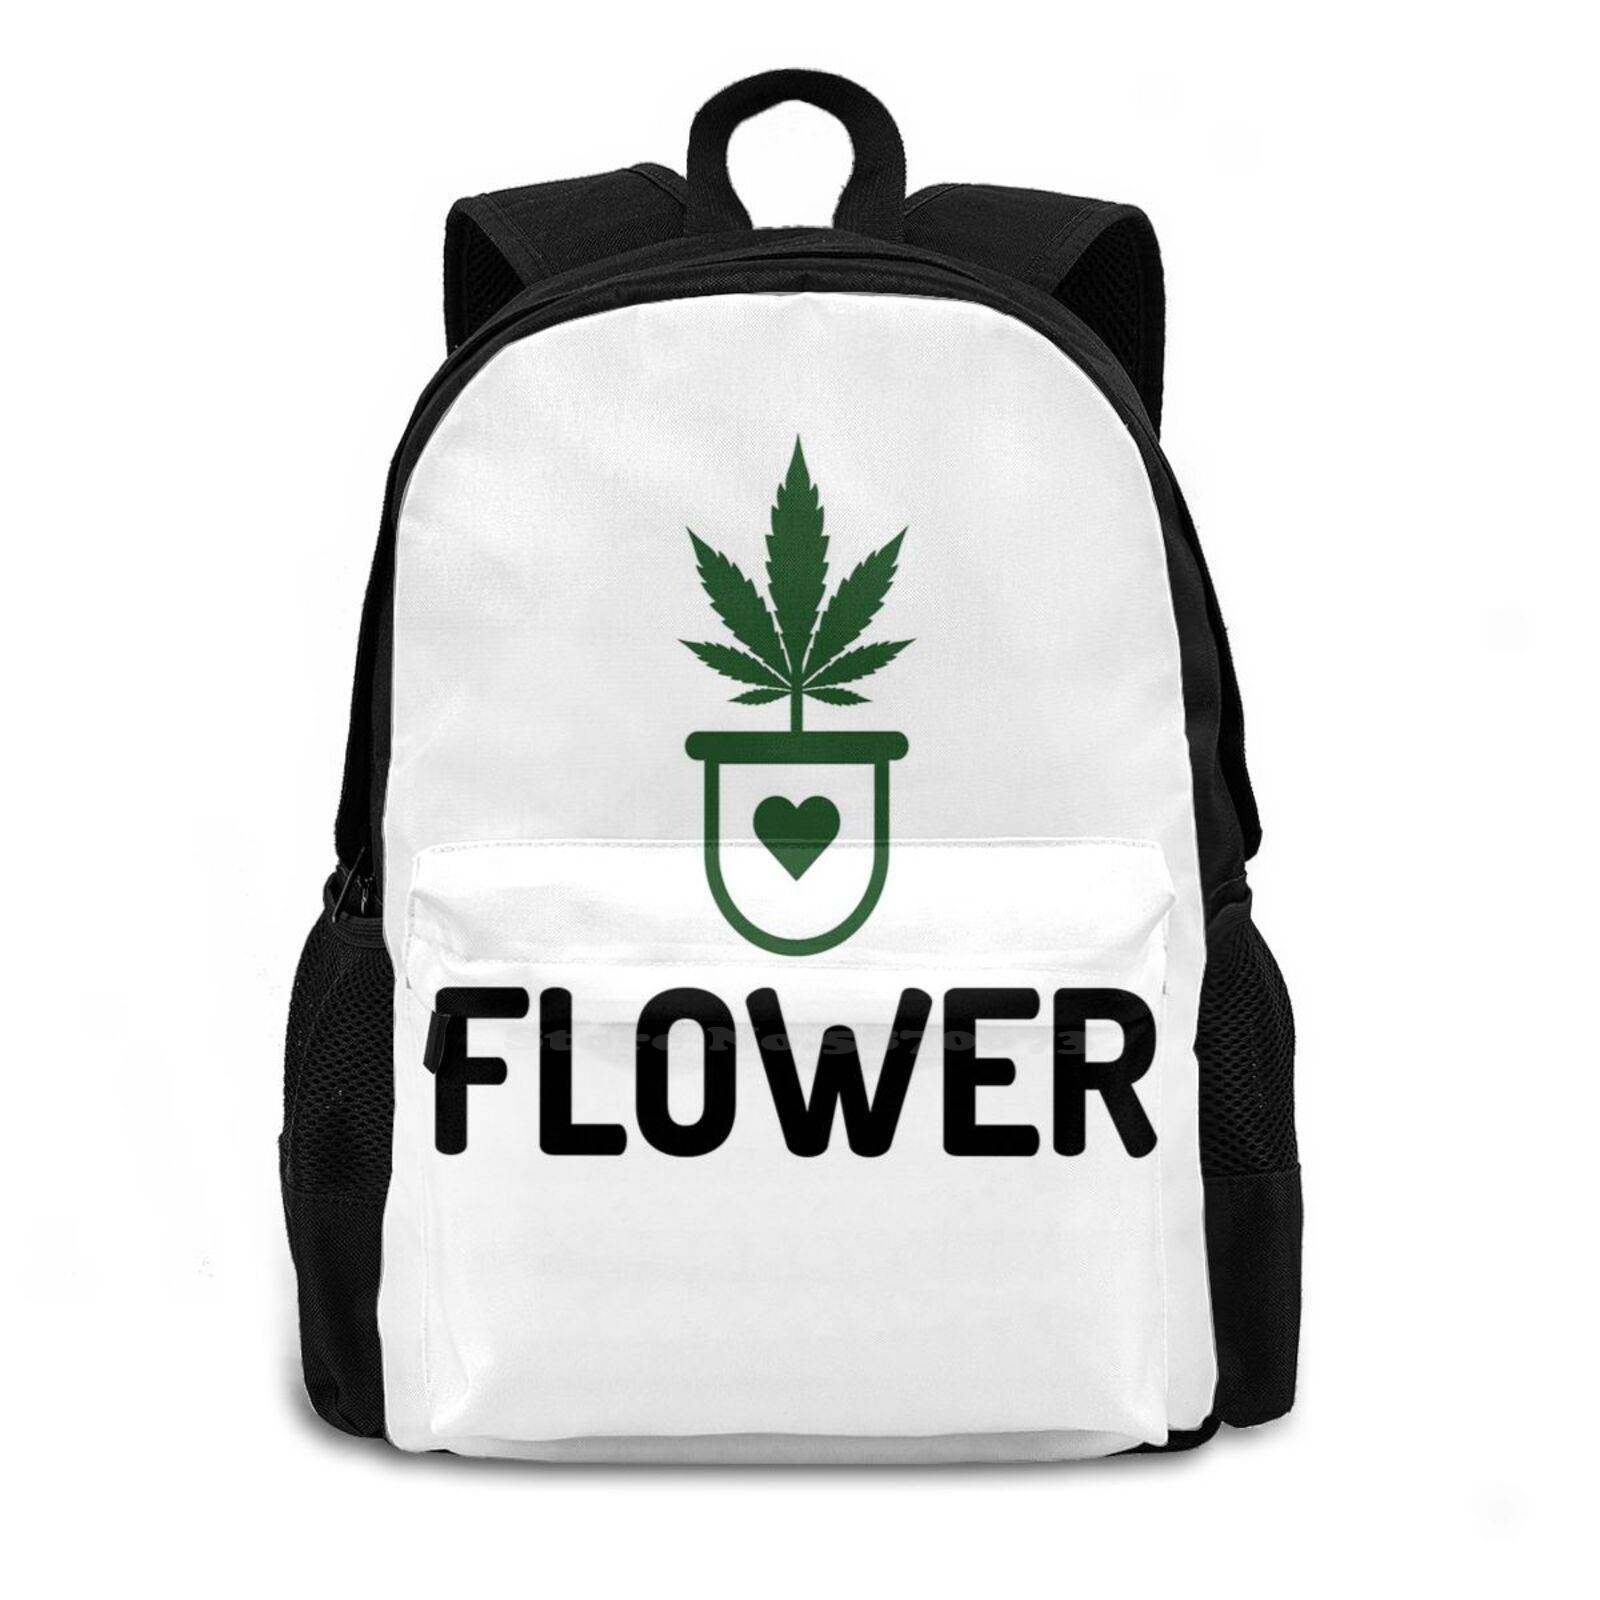 Weed Flower School Backpack - weed-backpacks-bags